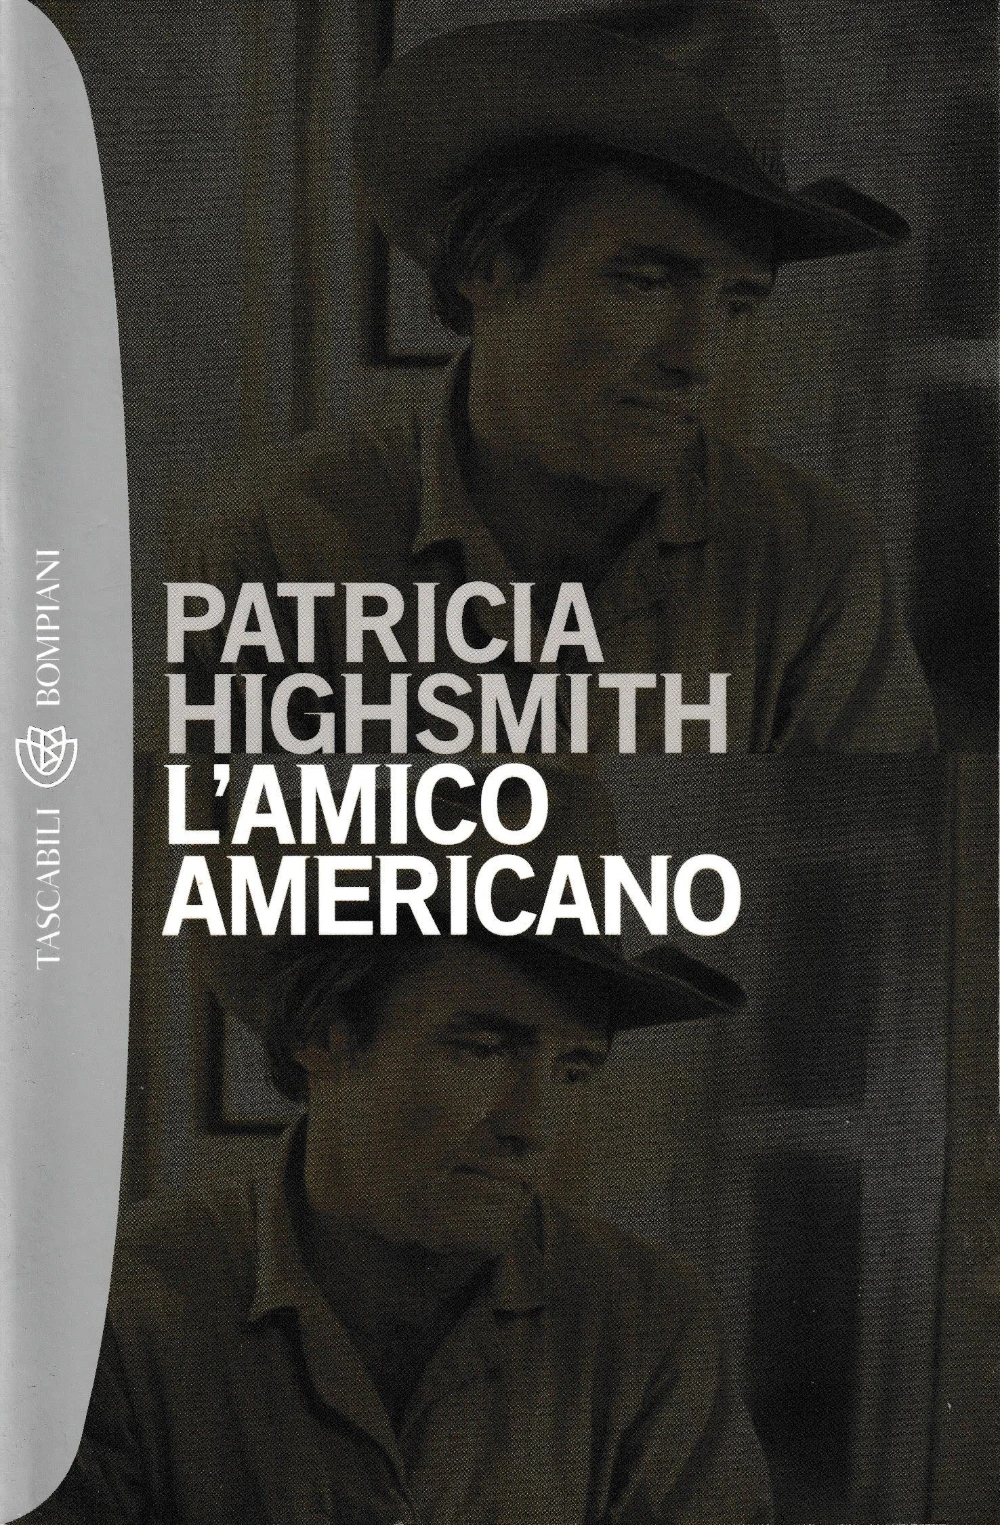 Patricia Highsmith: L'amico americano (Paperback, Italiano language, 2000, Bompiani)